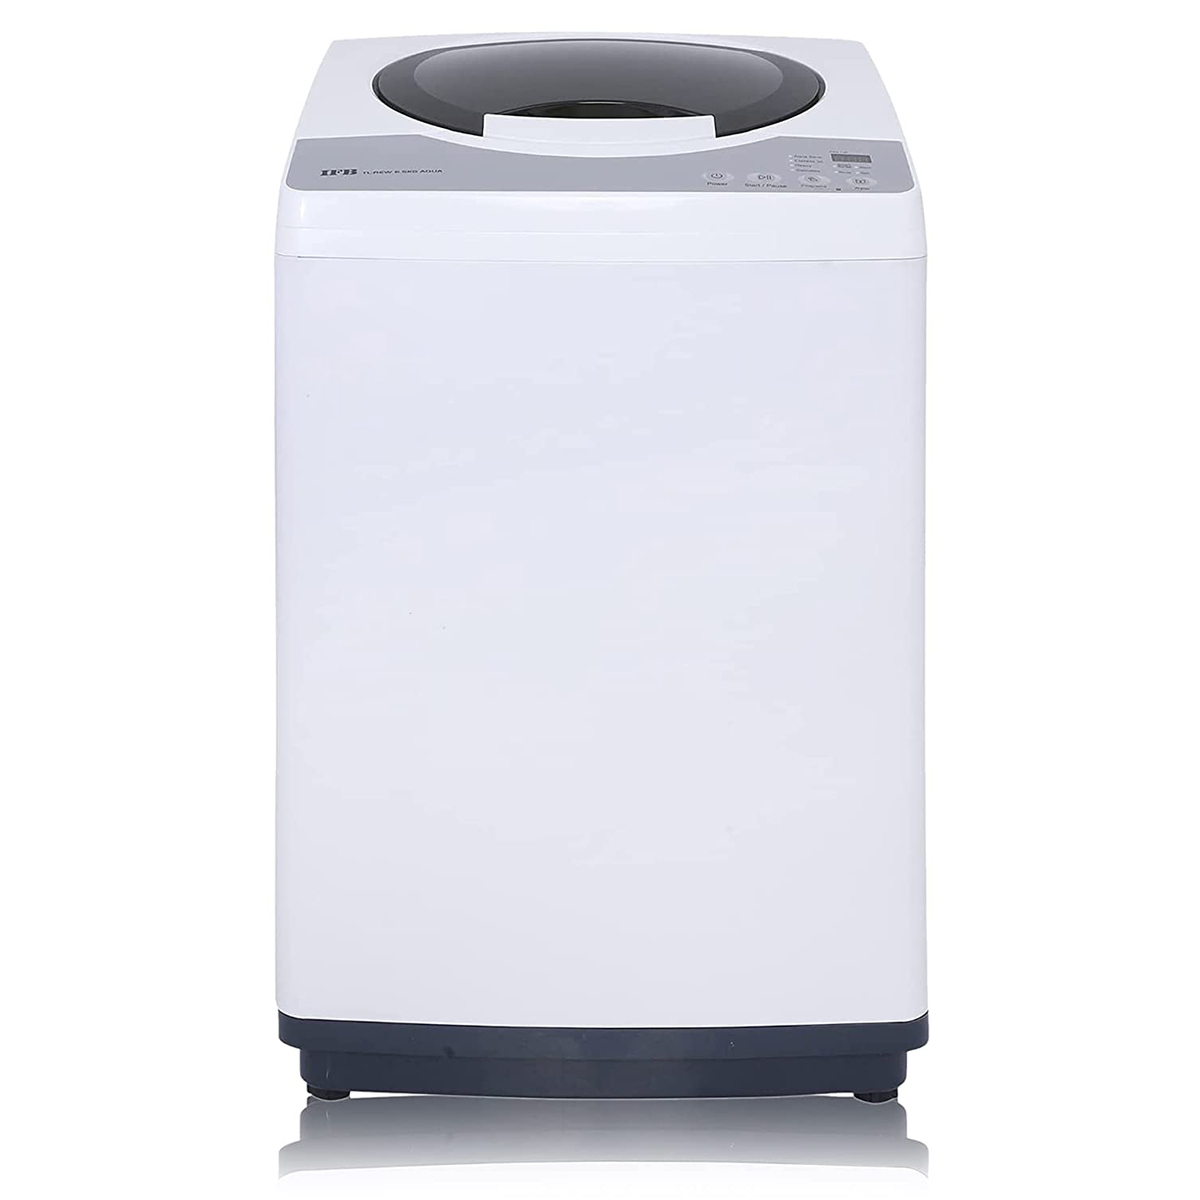 IFB TL-REW Aqua Fully Automatic Washing Machine 6.5kg